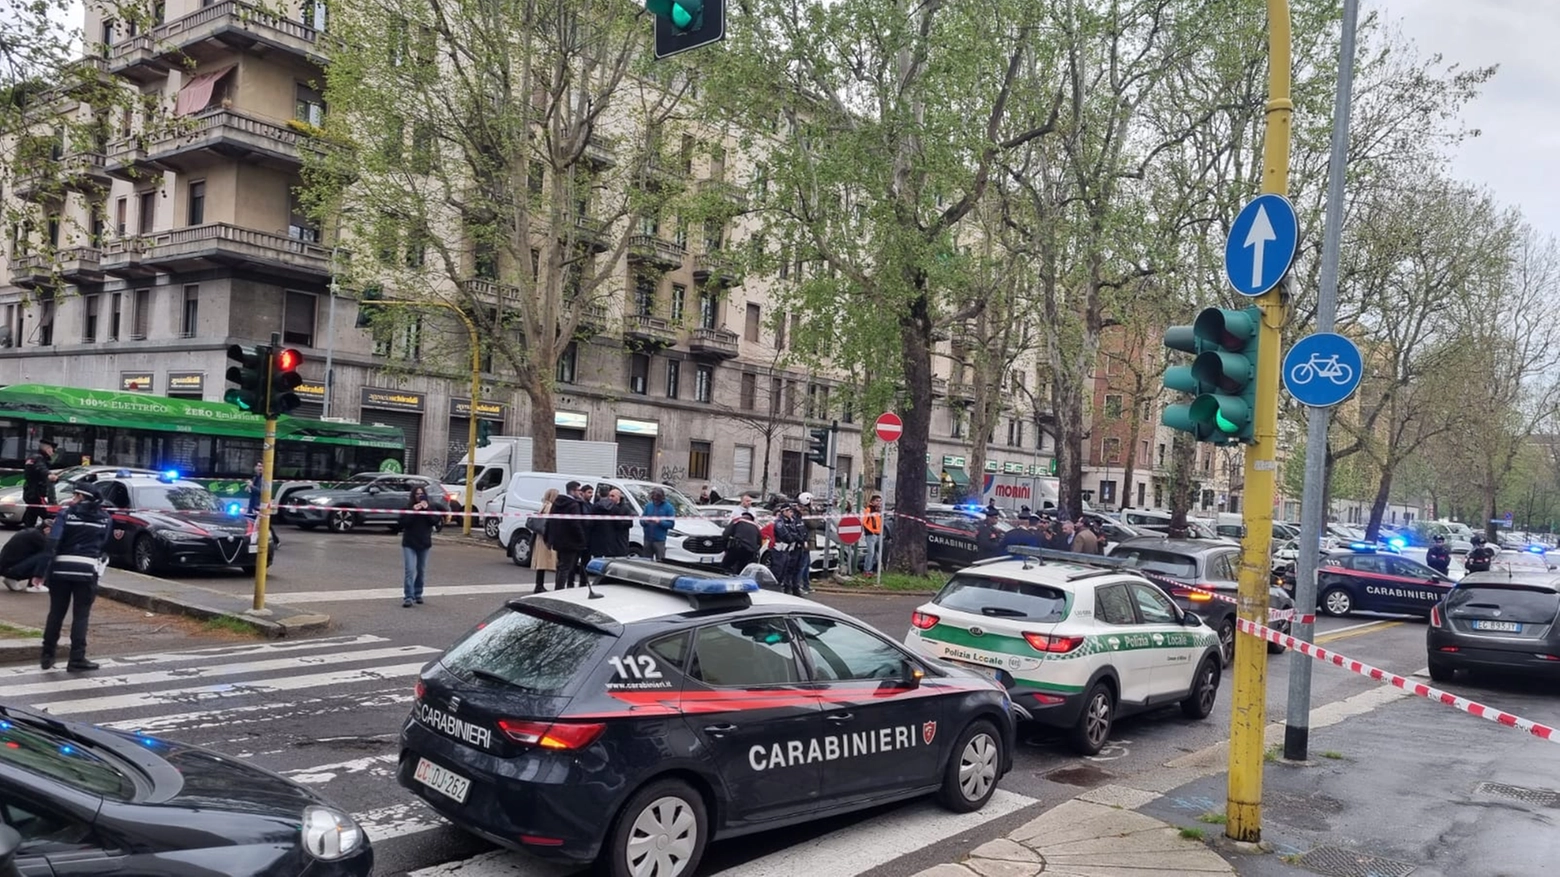 L'intervento di Carabinieri e Polizia Locale sul luogo della sparatoria in viale Marche (Foto Fasani)